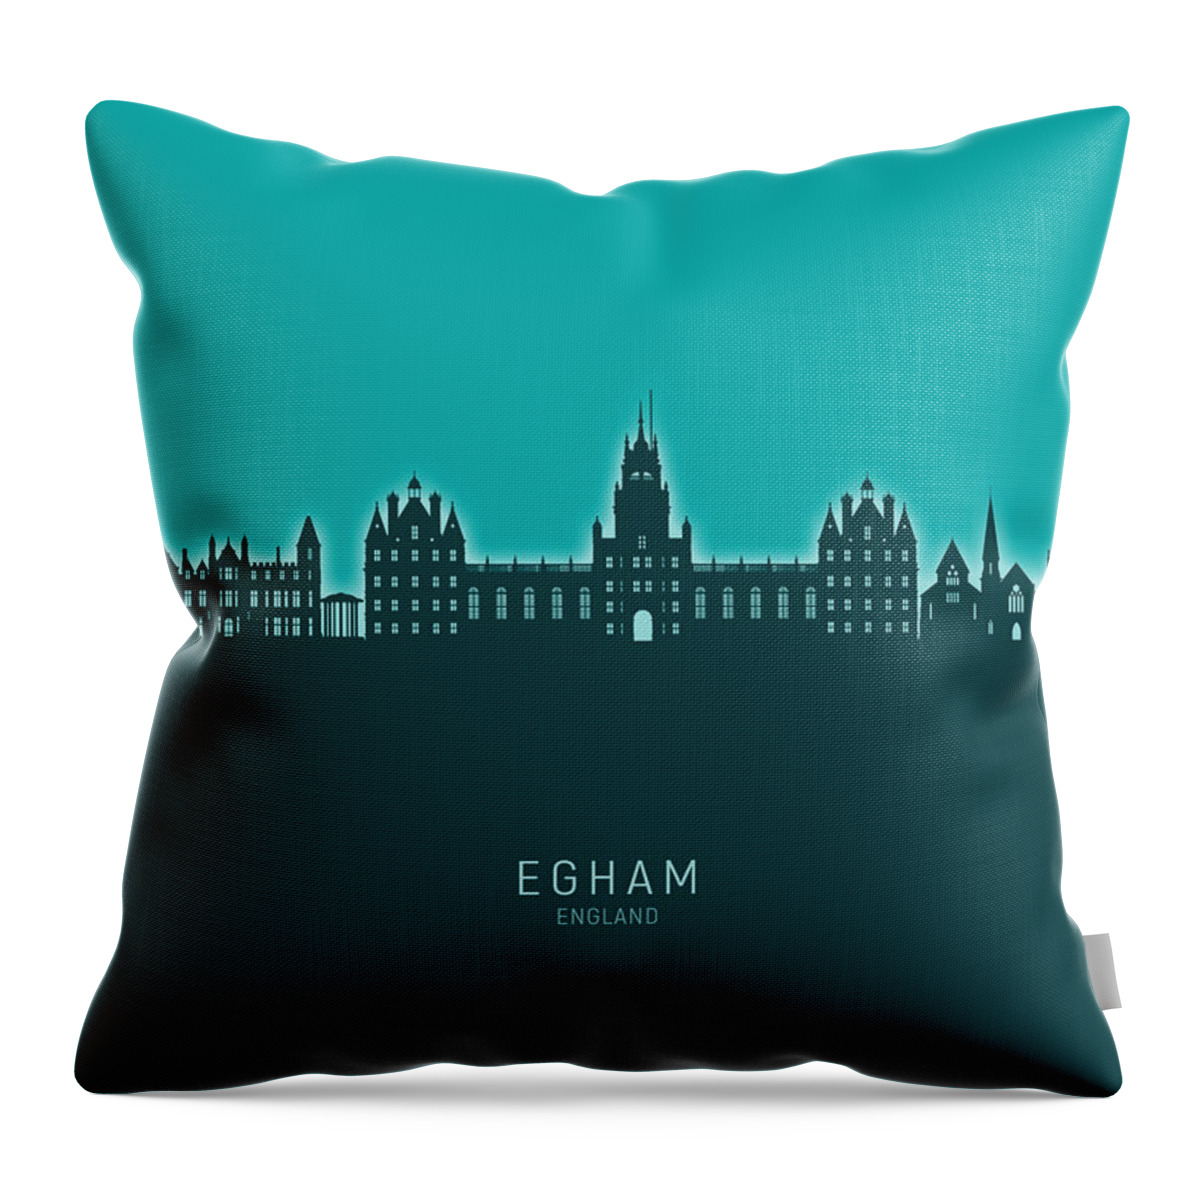 Egham Throw Pillow featuring the digital art Egham England Skyline #56 by Michael Tompsett